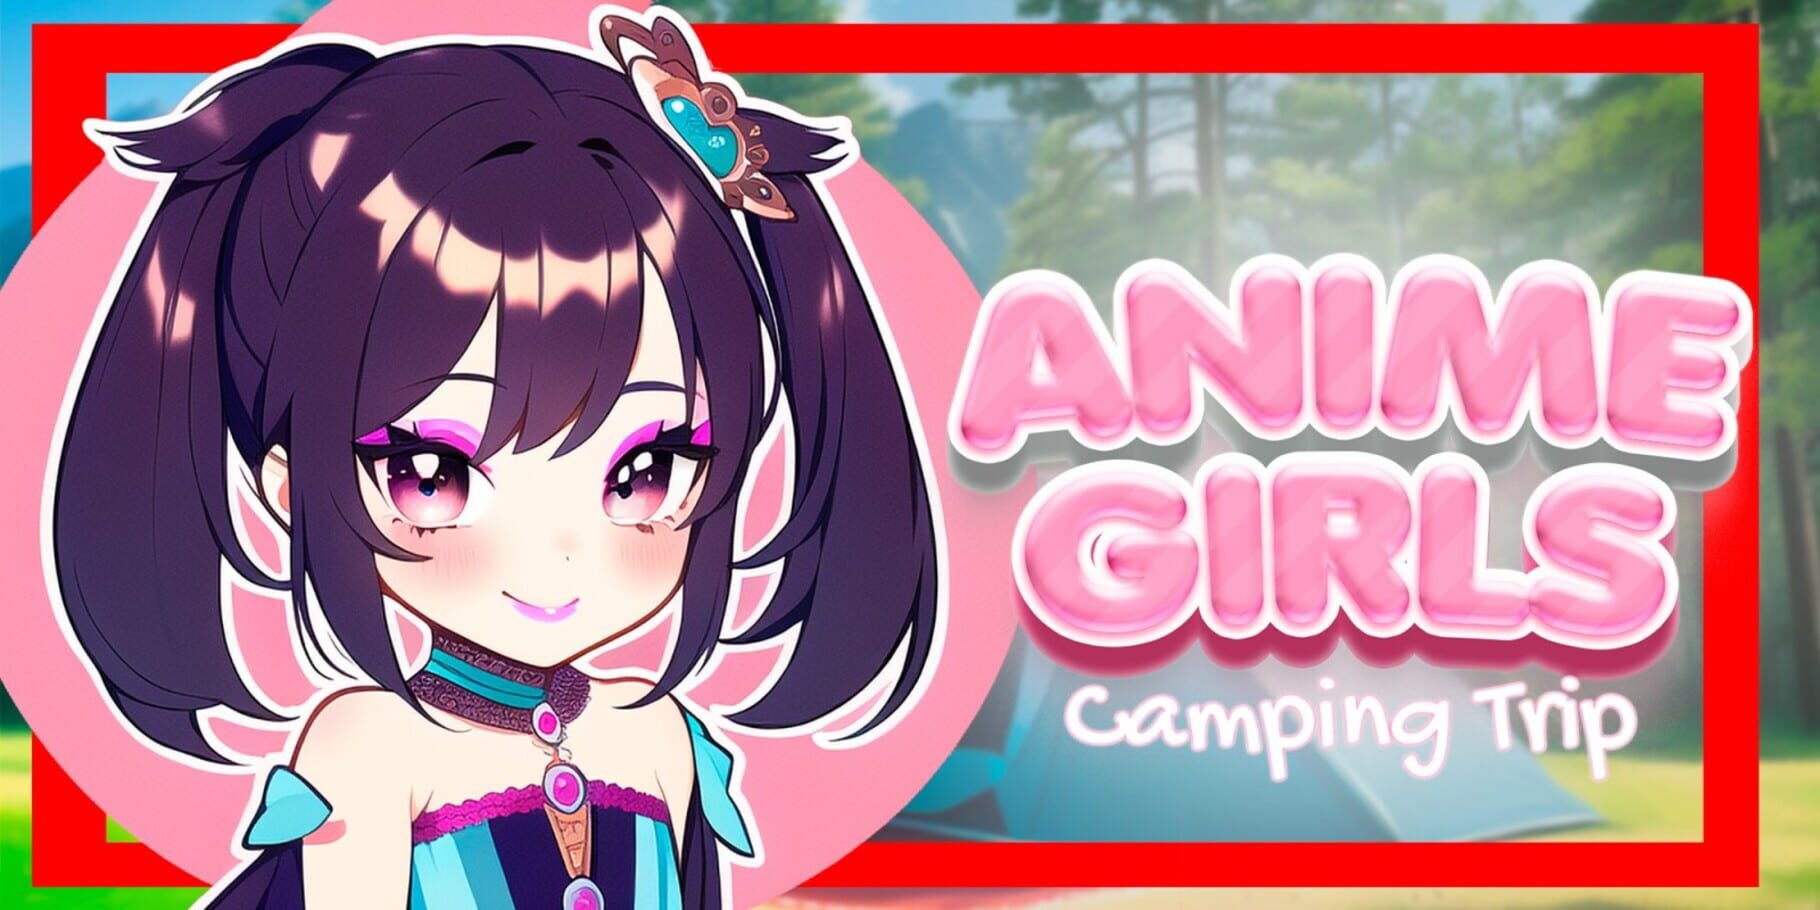 Anime Girls: Camping Trip artwork